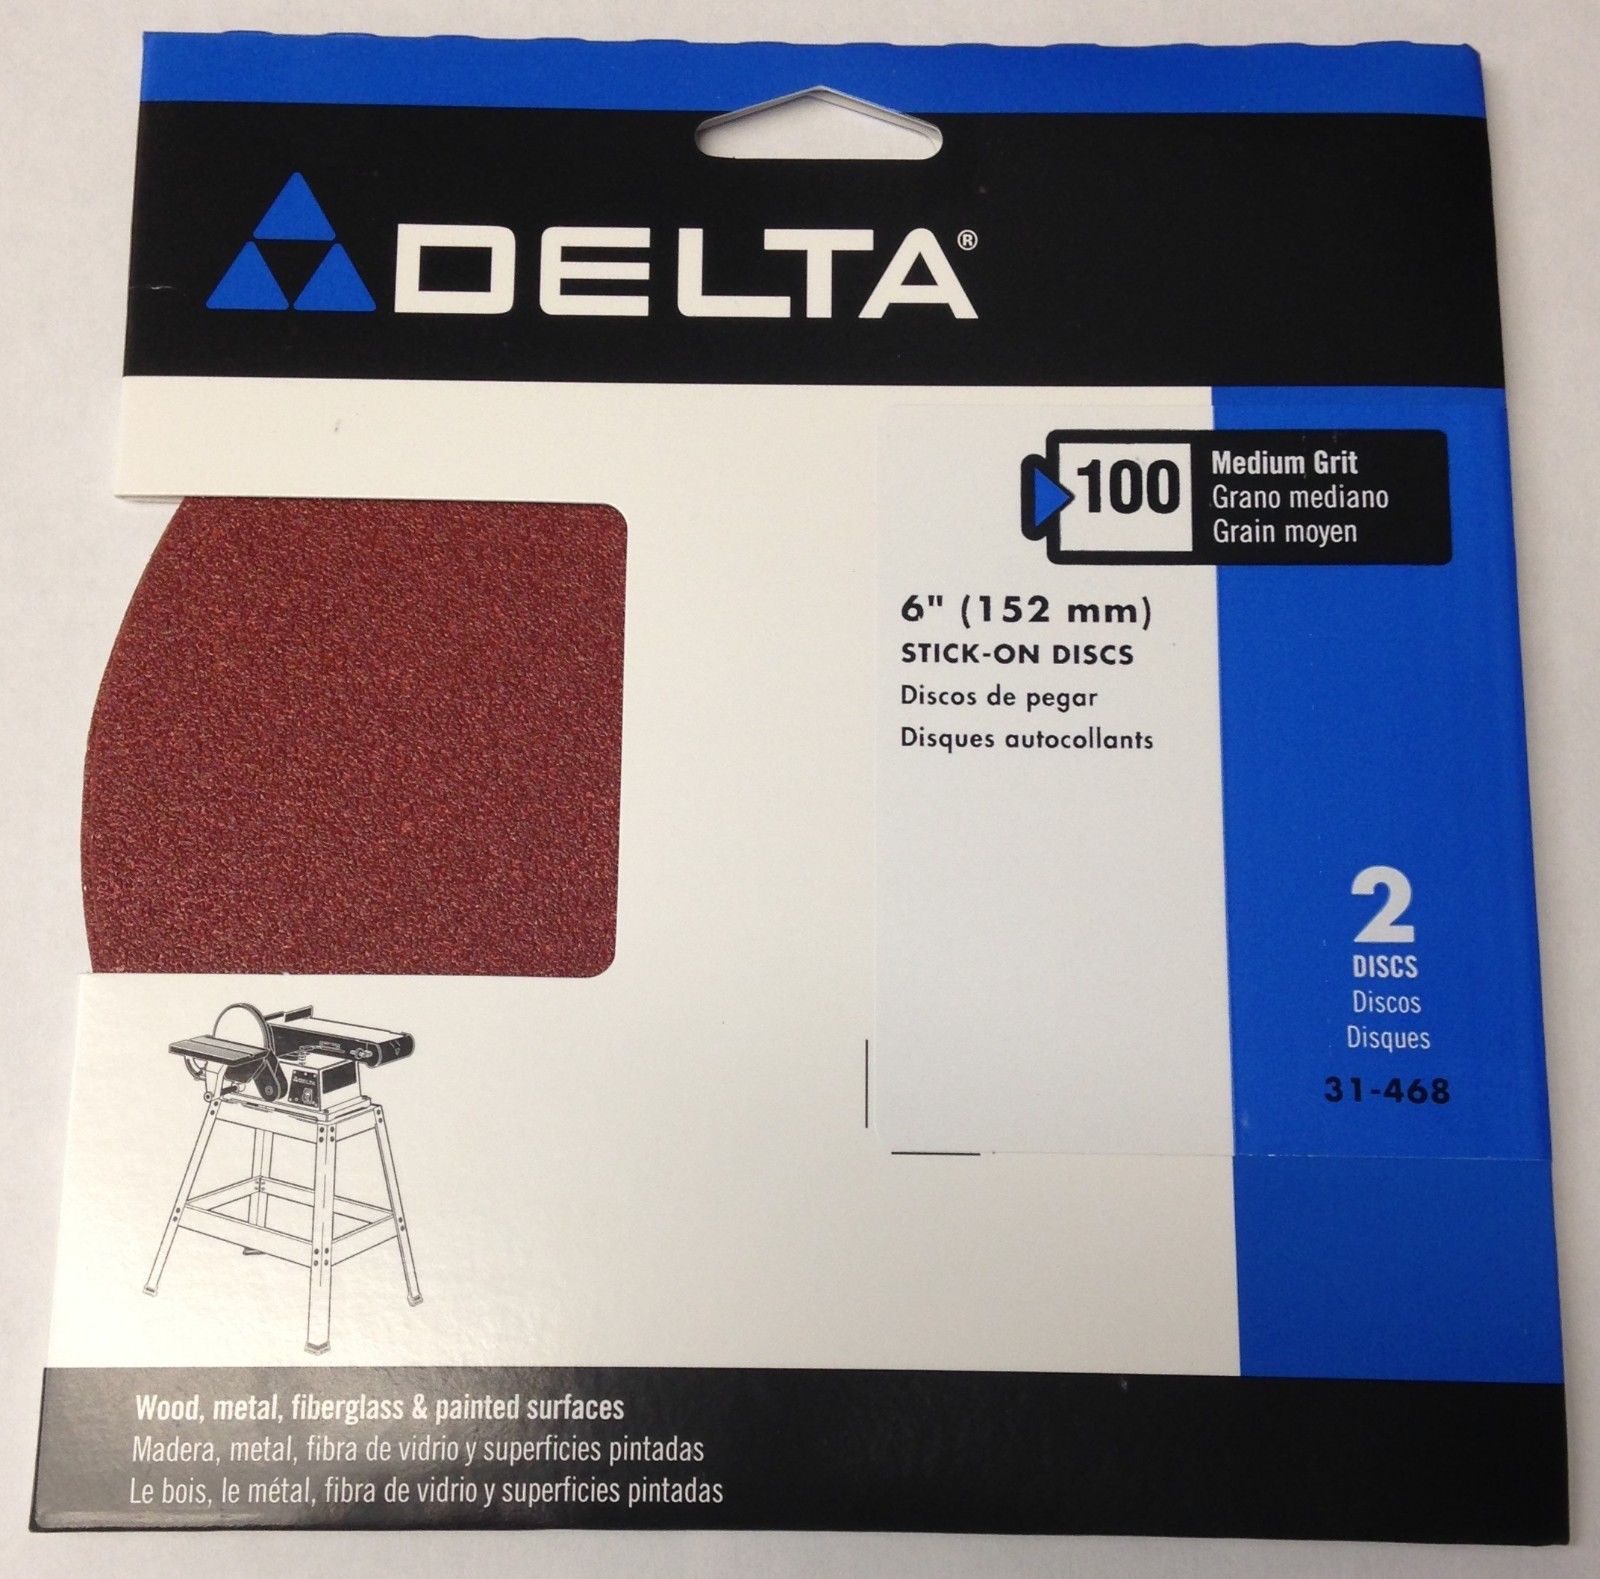 Delta 31-468 6" 100 Medium Grit Stick-On Discs 2 Pack